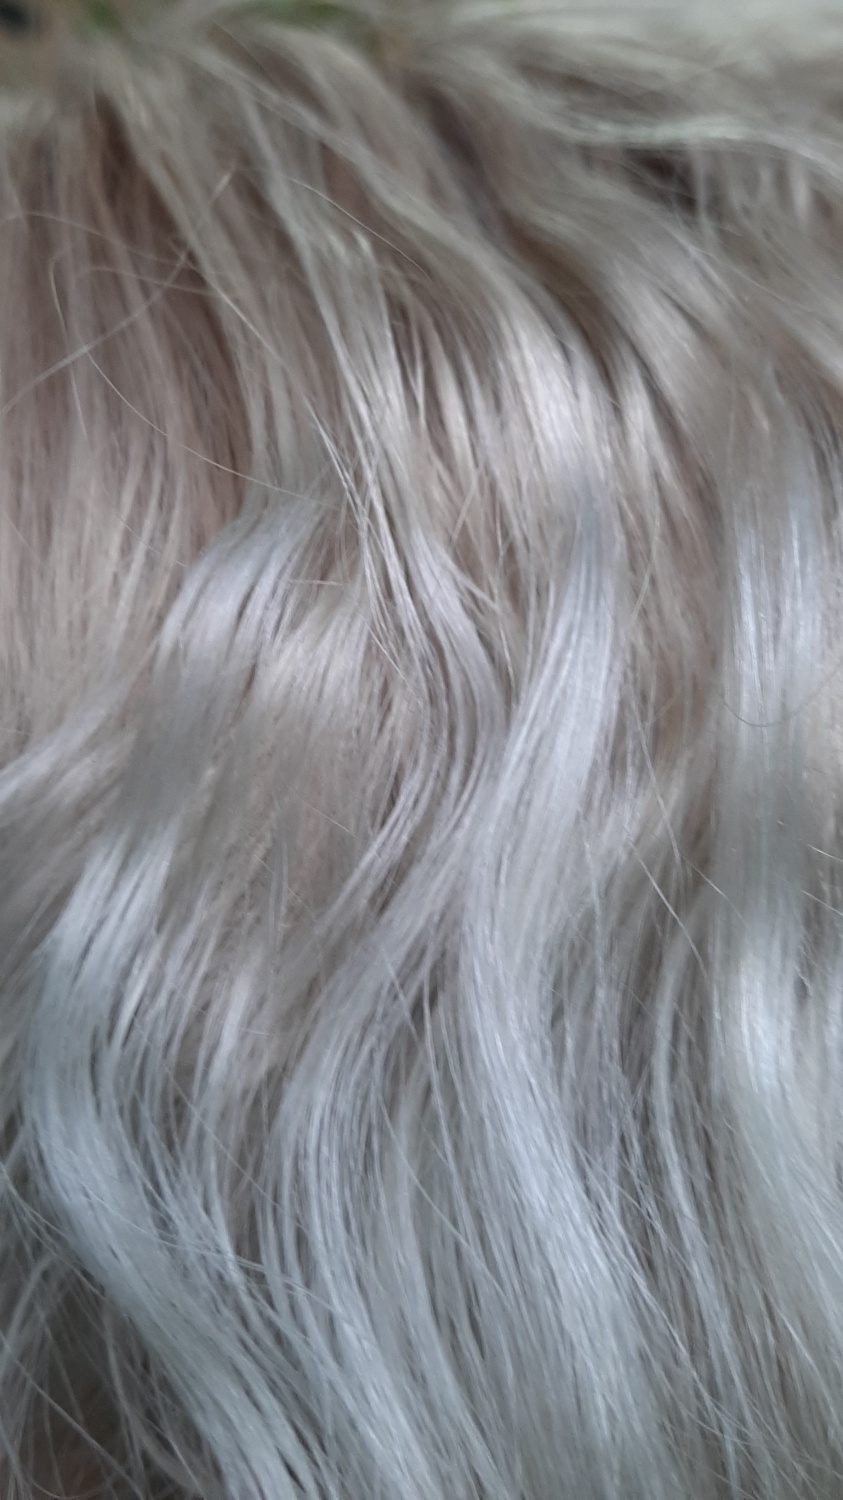 Краска для волос SYOSS Professional performance permanent coloration  фото